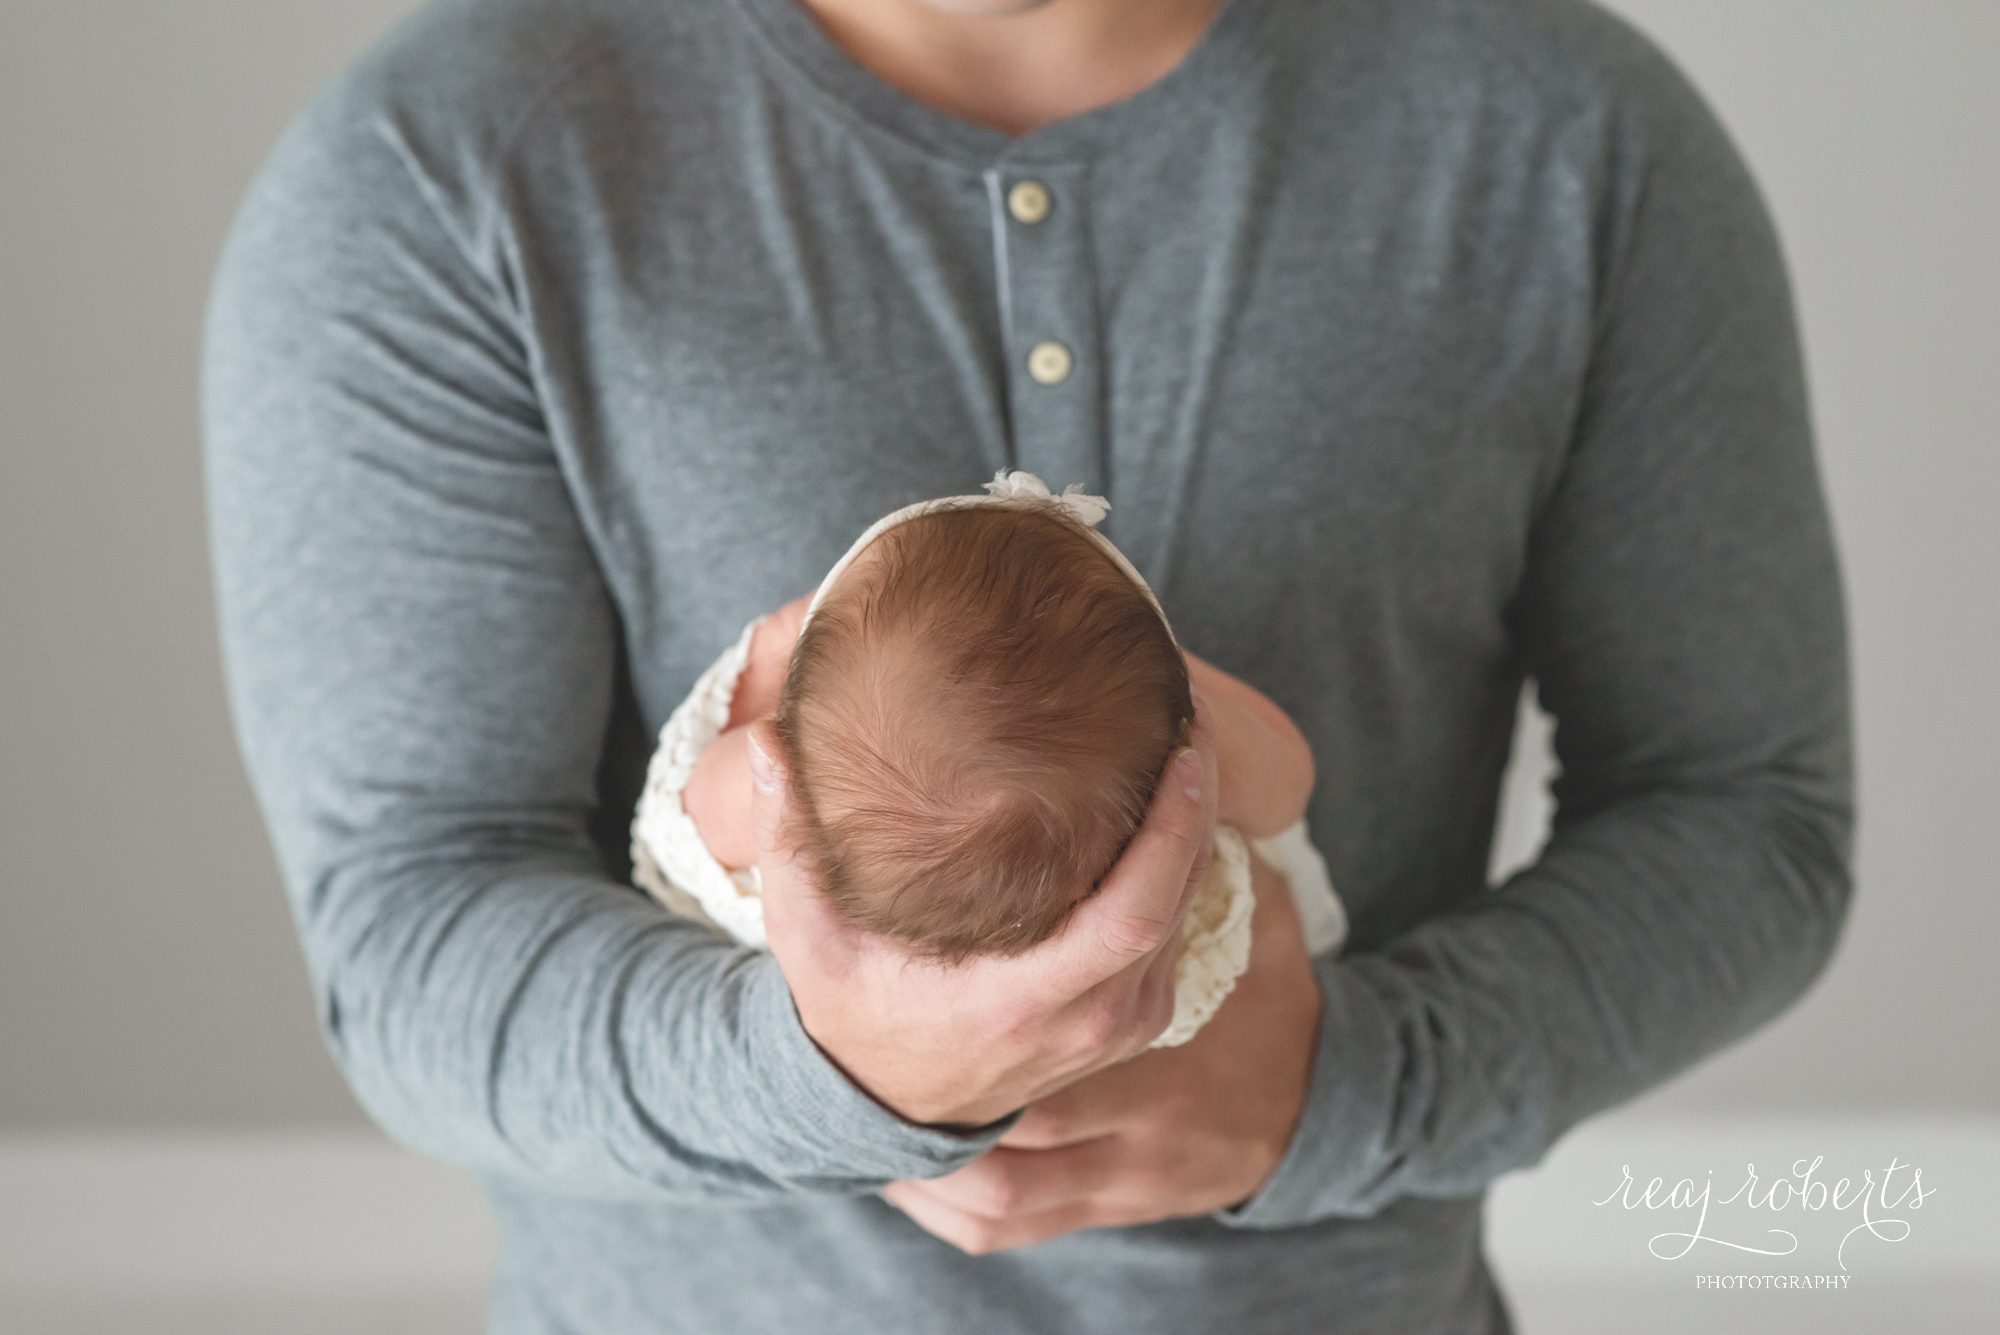 newborn held in dad's hands | Reaj Roberts Photography